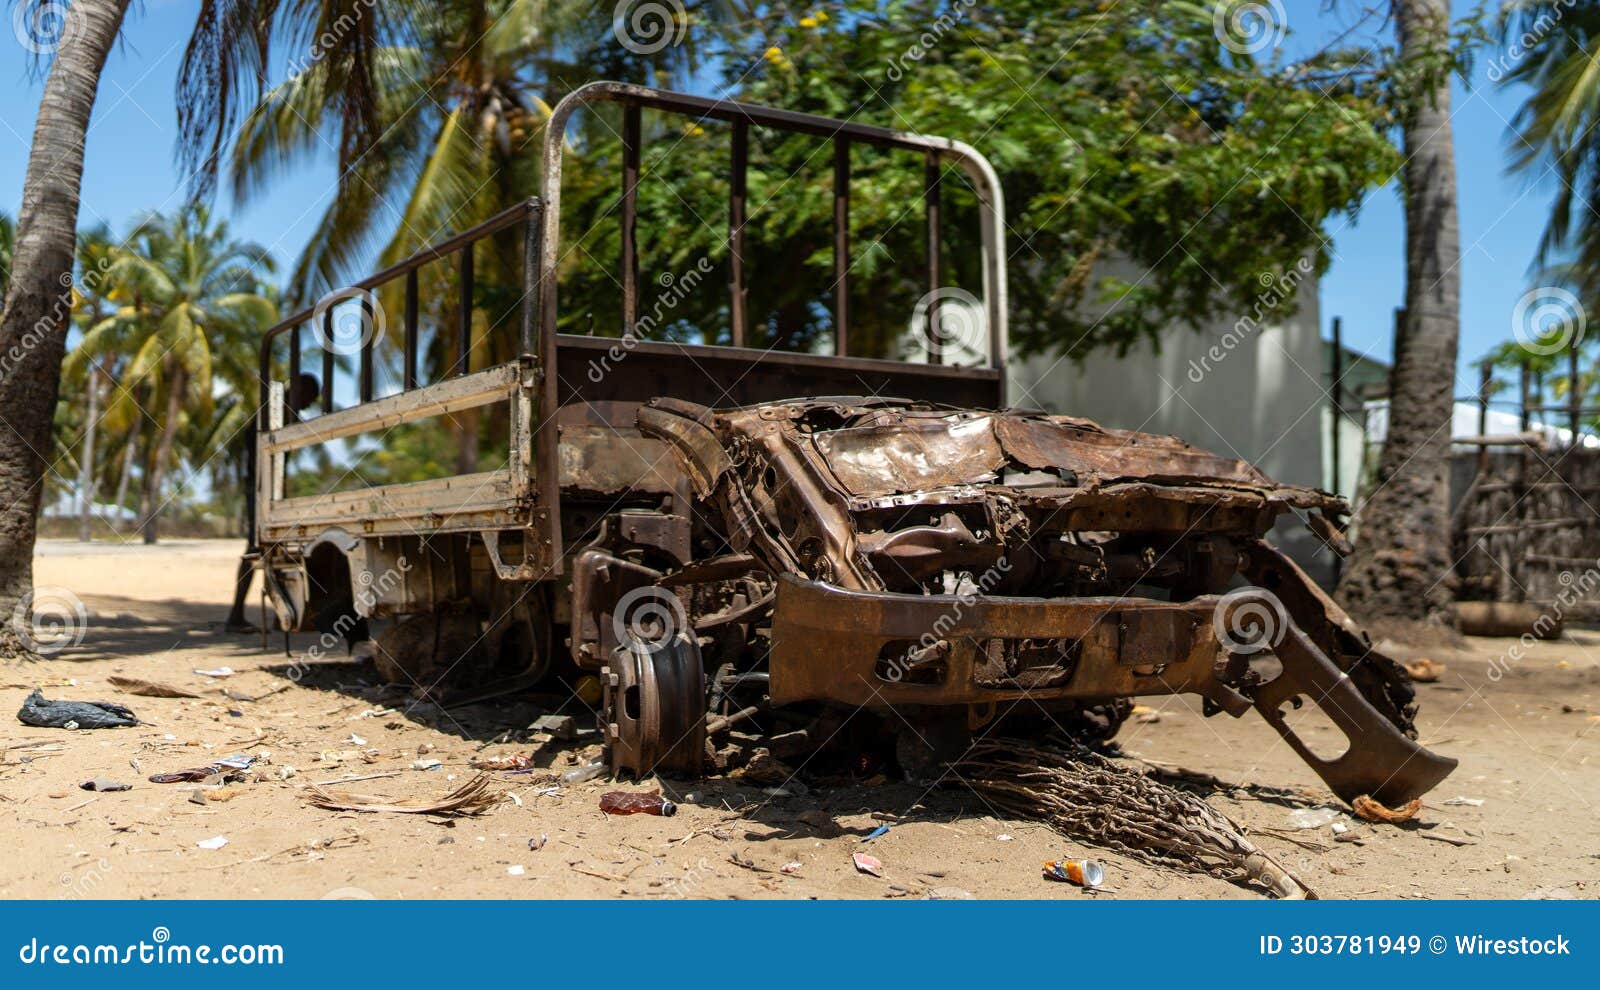 abandoned and destroyed car in mocimboa da praia in cabo delgado, mozambique